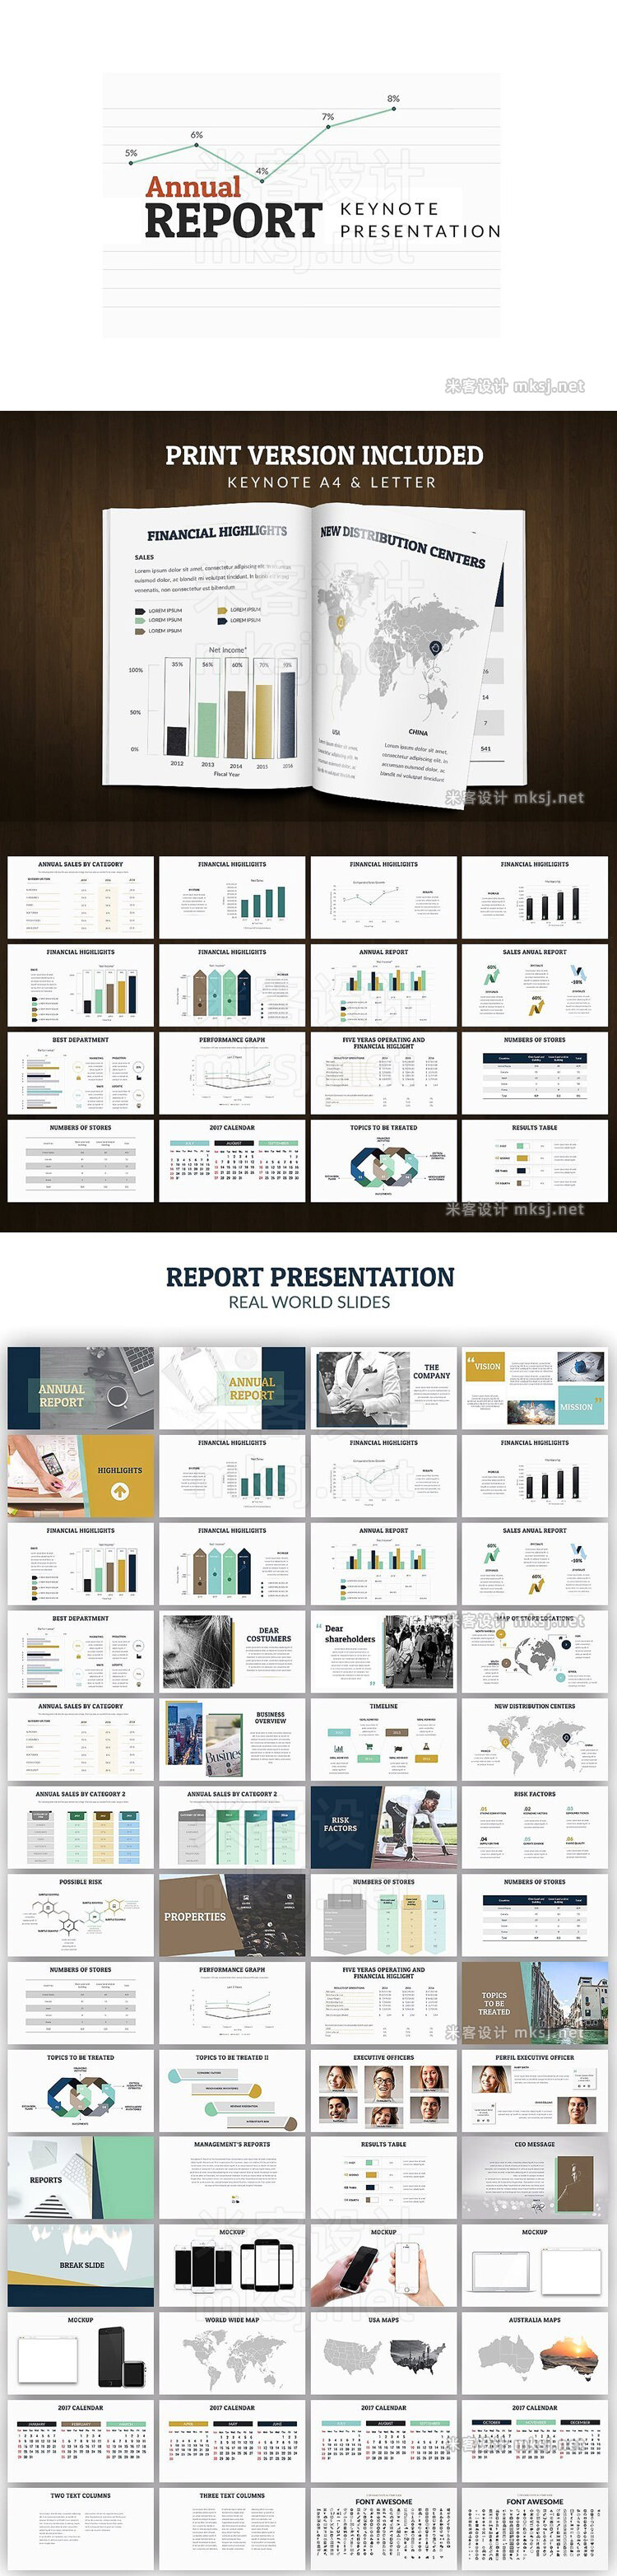 keynote模板 Annual Report Keynote presentation